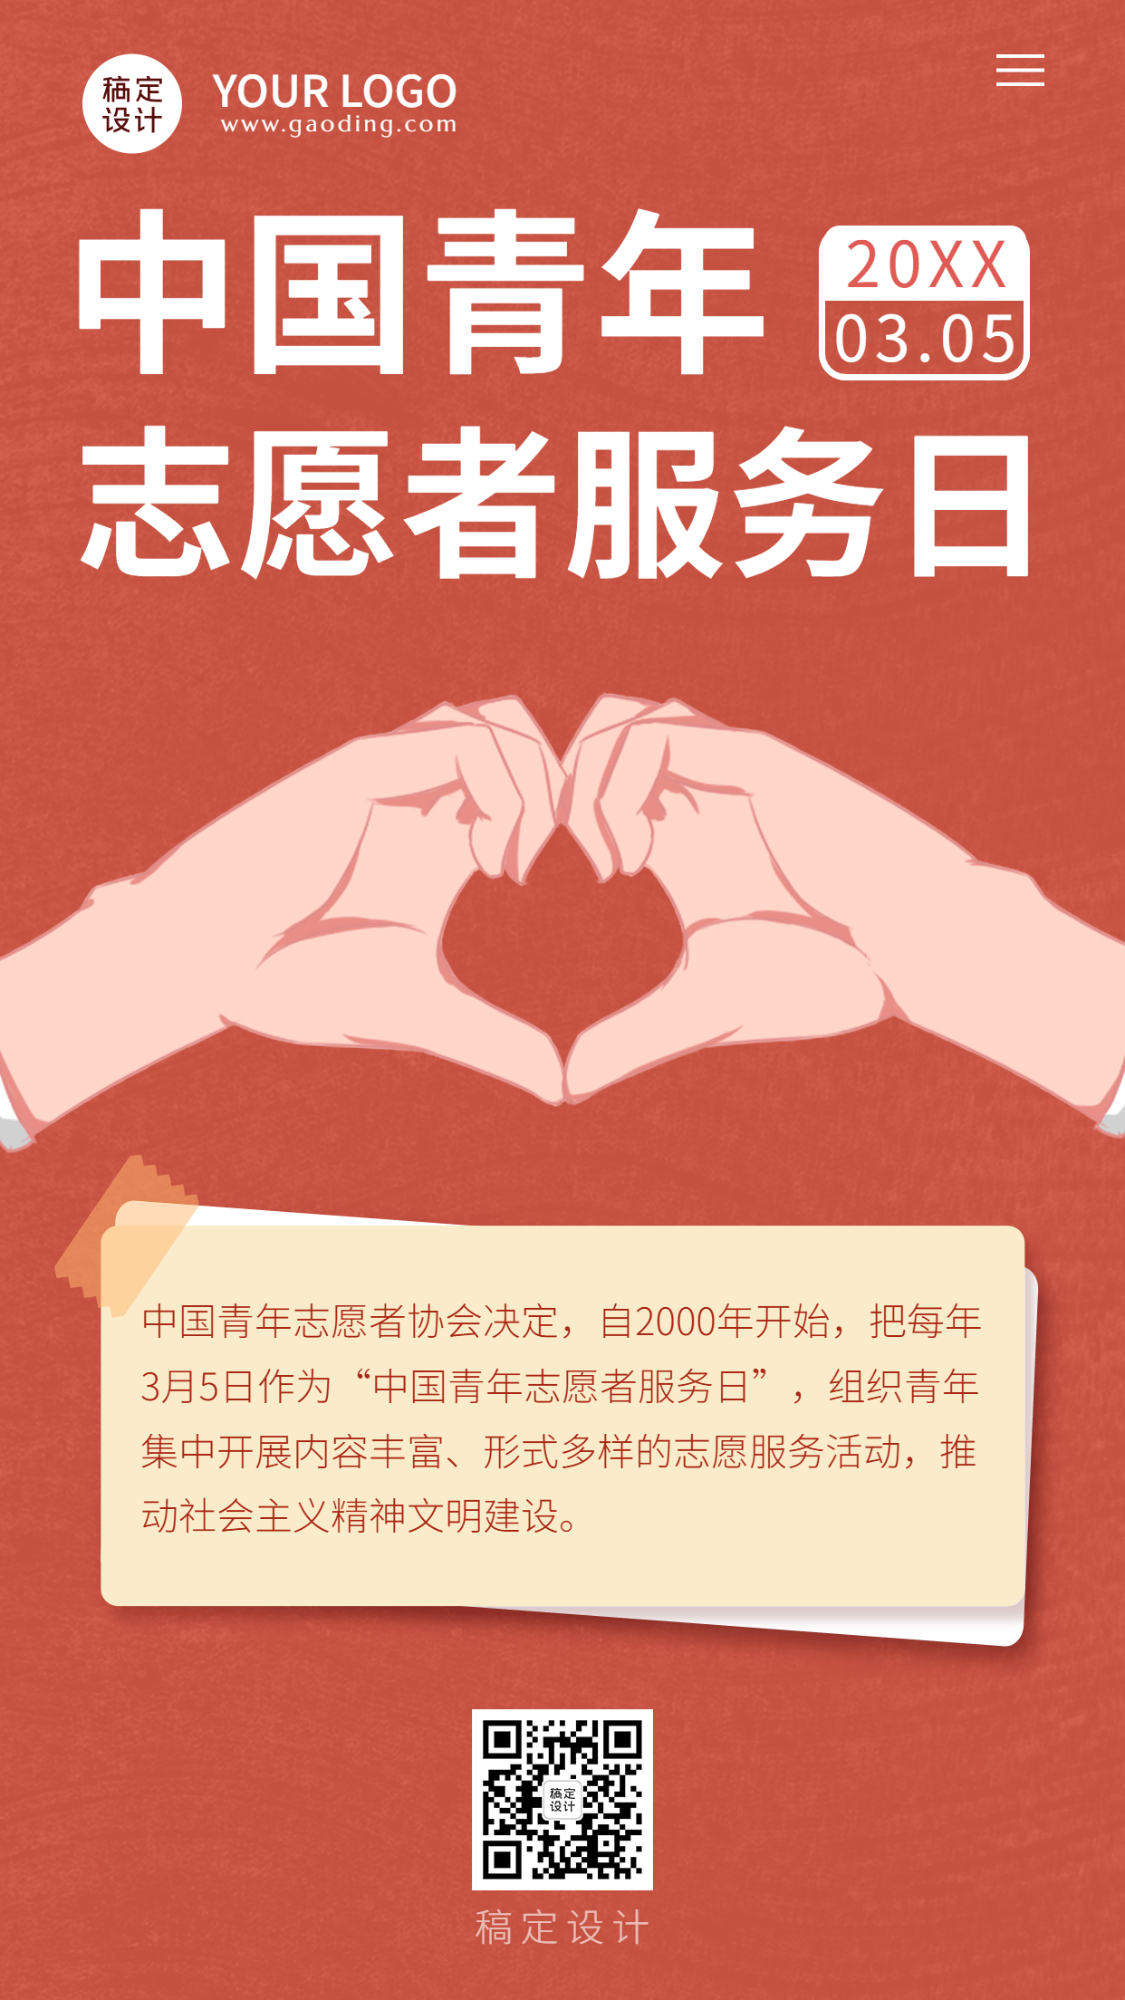 3.5中国青年志愿者服务日手机海报